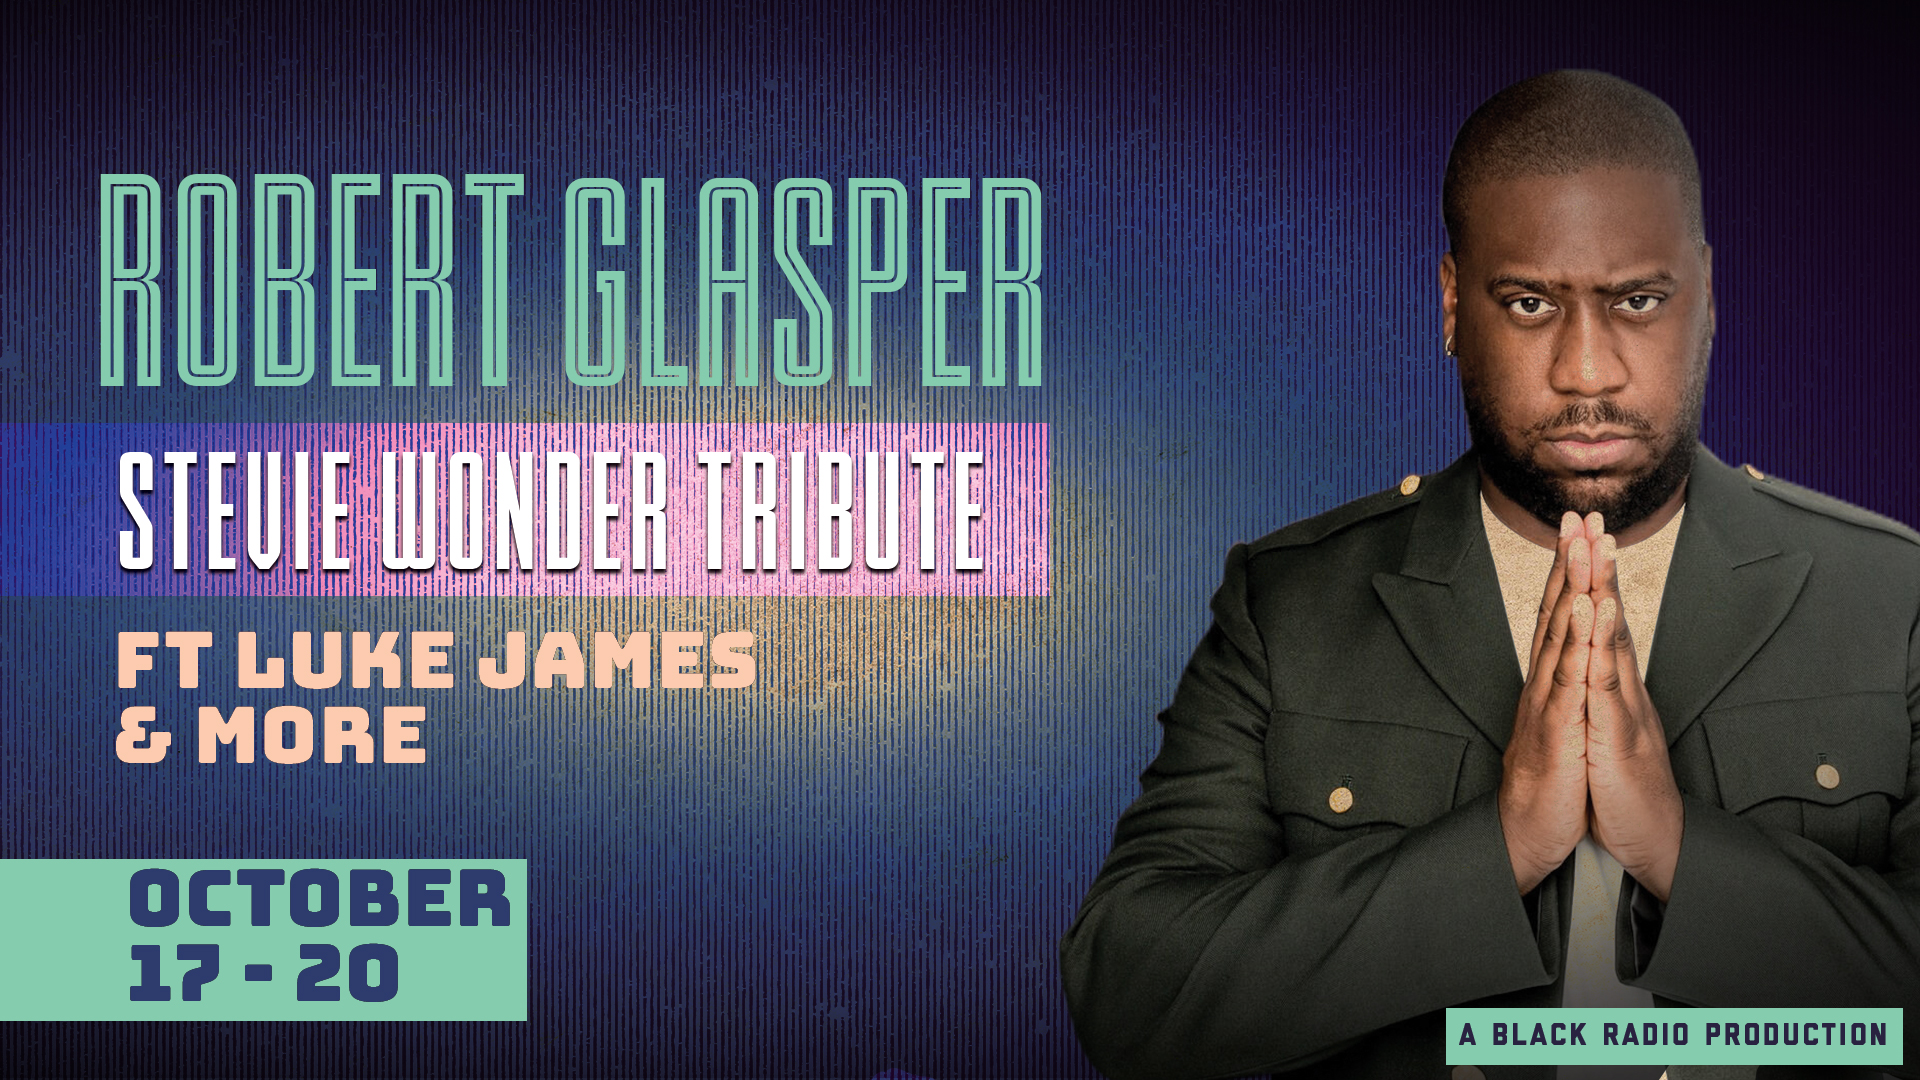 Robert Glasper Stevie Wonder Tribute Featuring Luke James